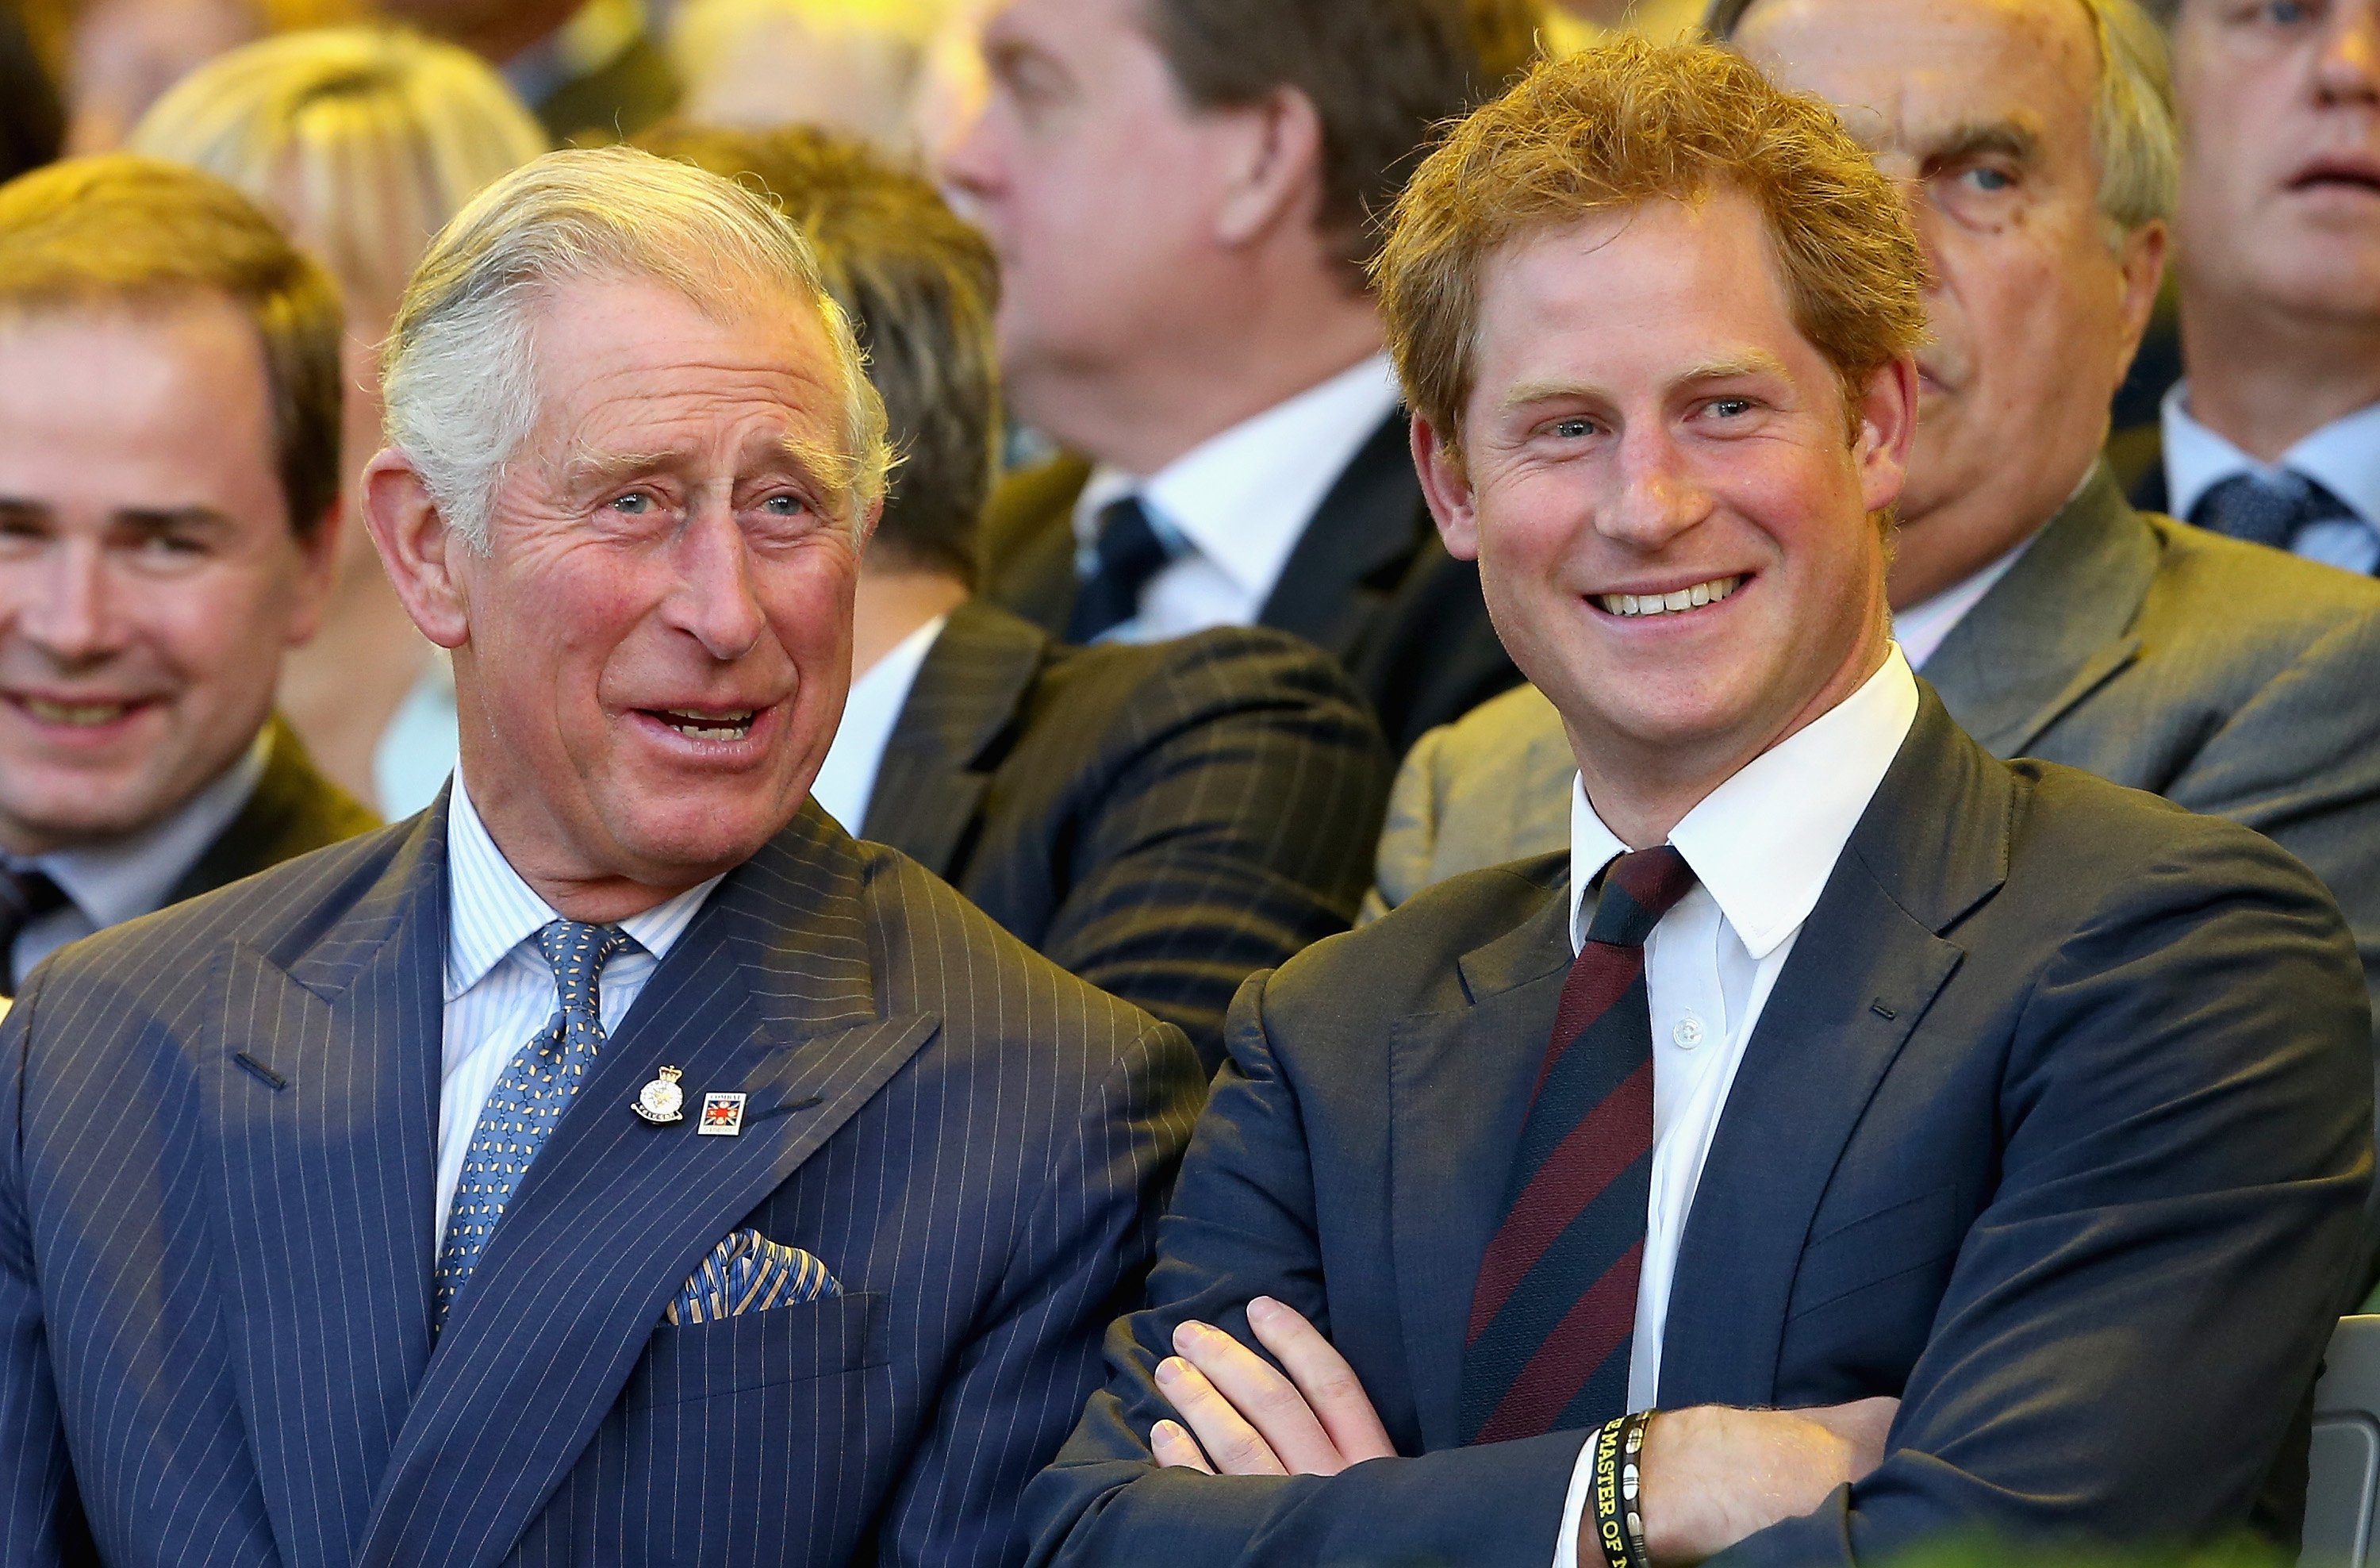 König Charles III. und Prinz Harry lachen während der Eröffnungszeremonie der Invictus Games am 10. September 2014 in London, England. | Quelle: Getty Images